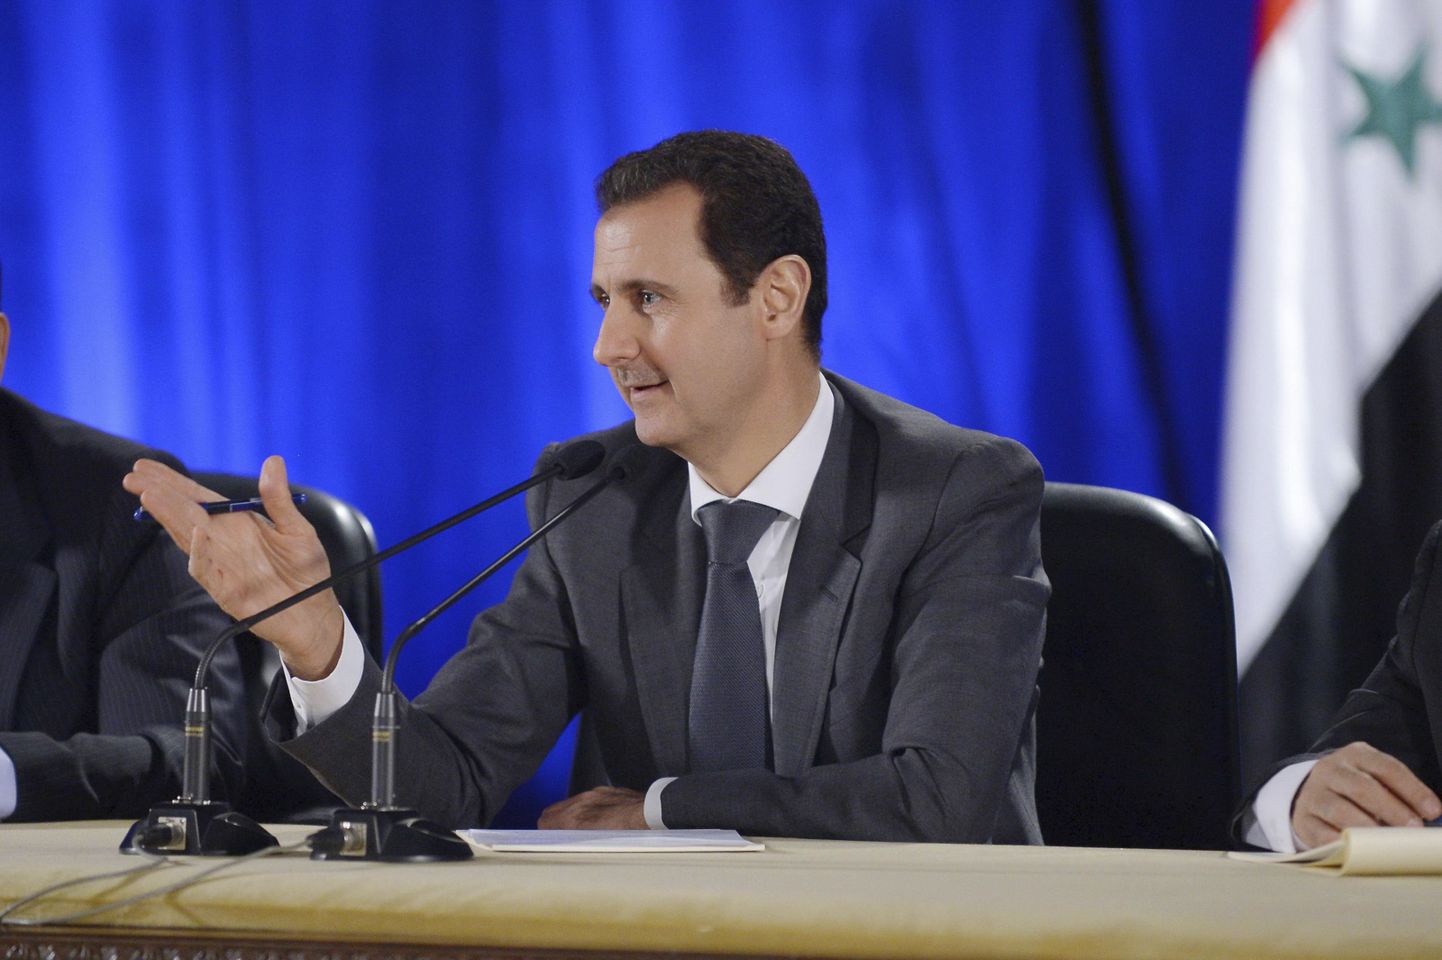 Süüria president Bashar al-Assad Damaskuses 20. novembril toimunud kohtumisel Baathi partei liidrite ja liikmetega.